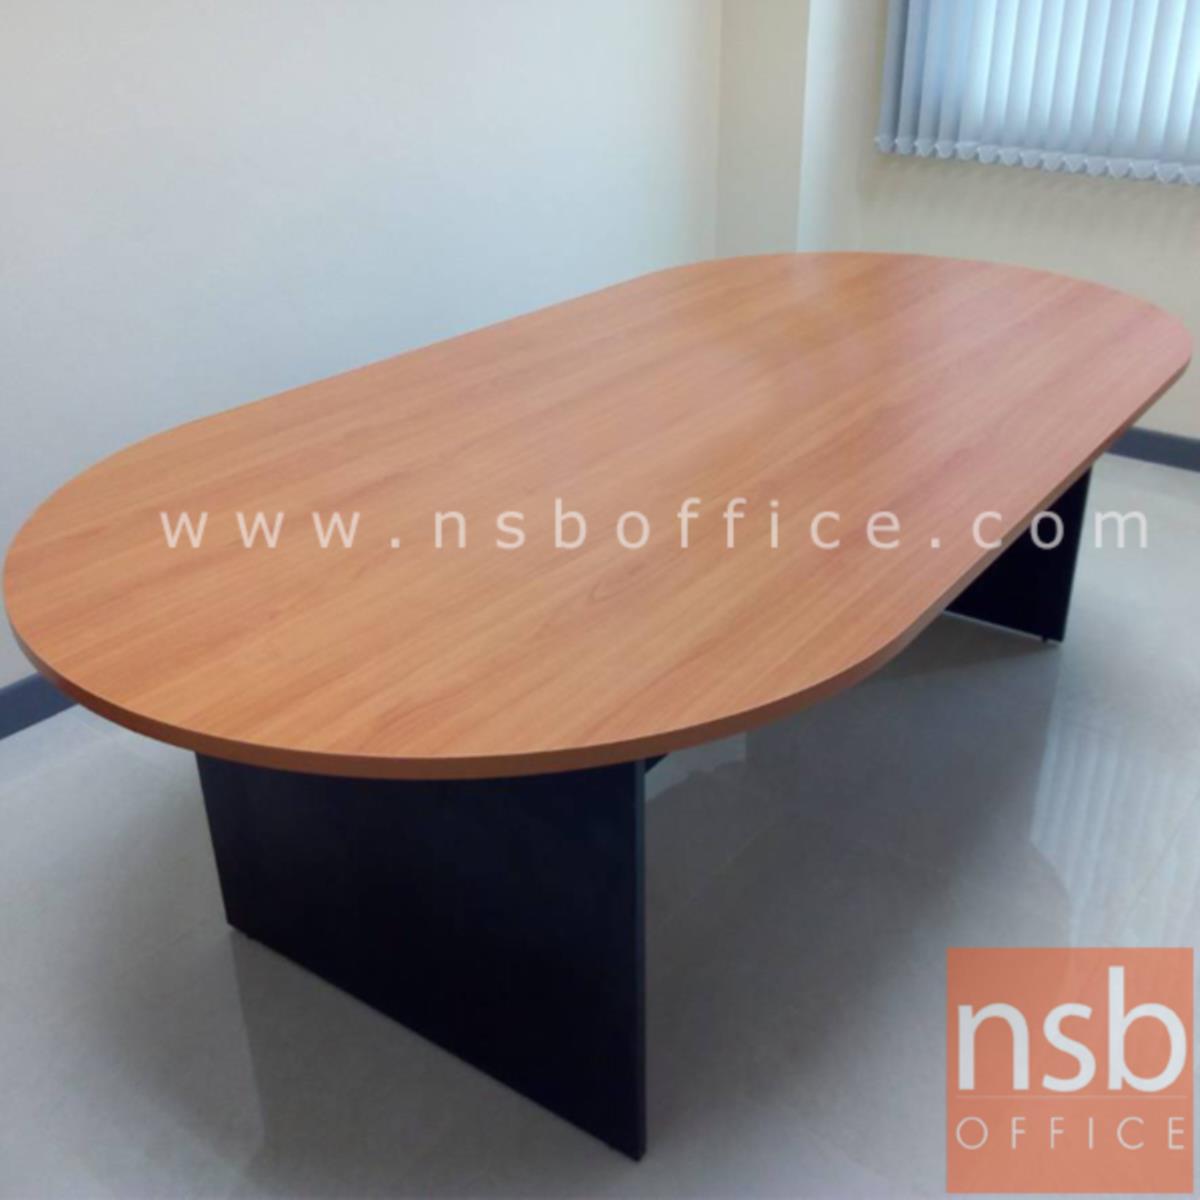 โต๊ะประชุมหัวโค้ง  ขนาด 180W, 200W, 240W cm.  ขาไม้